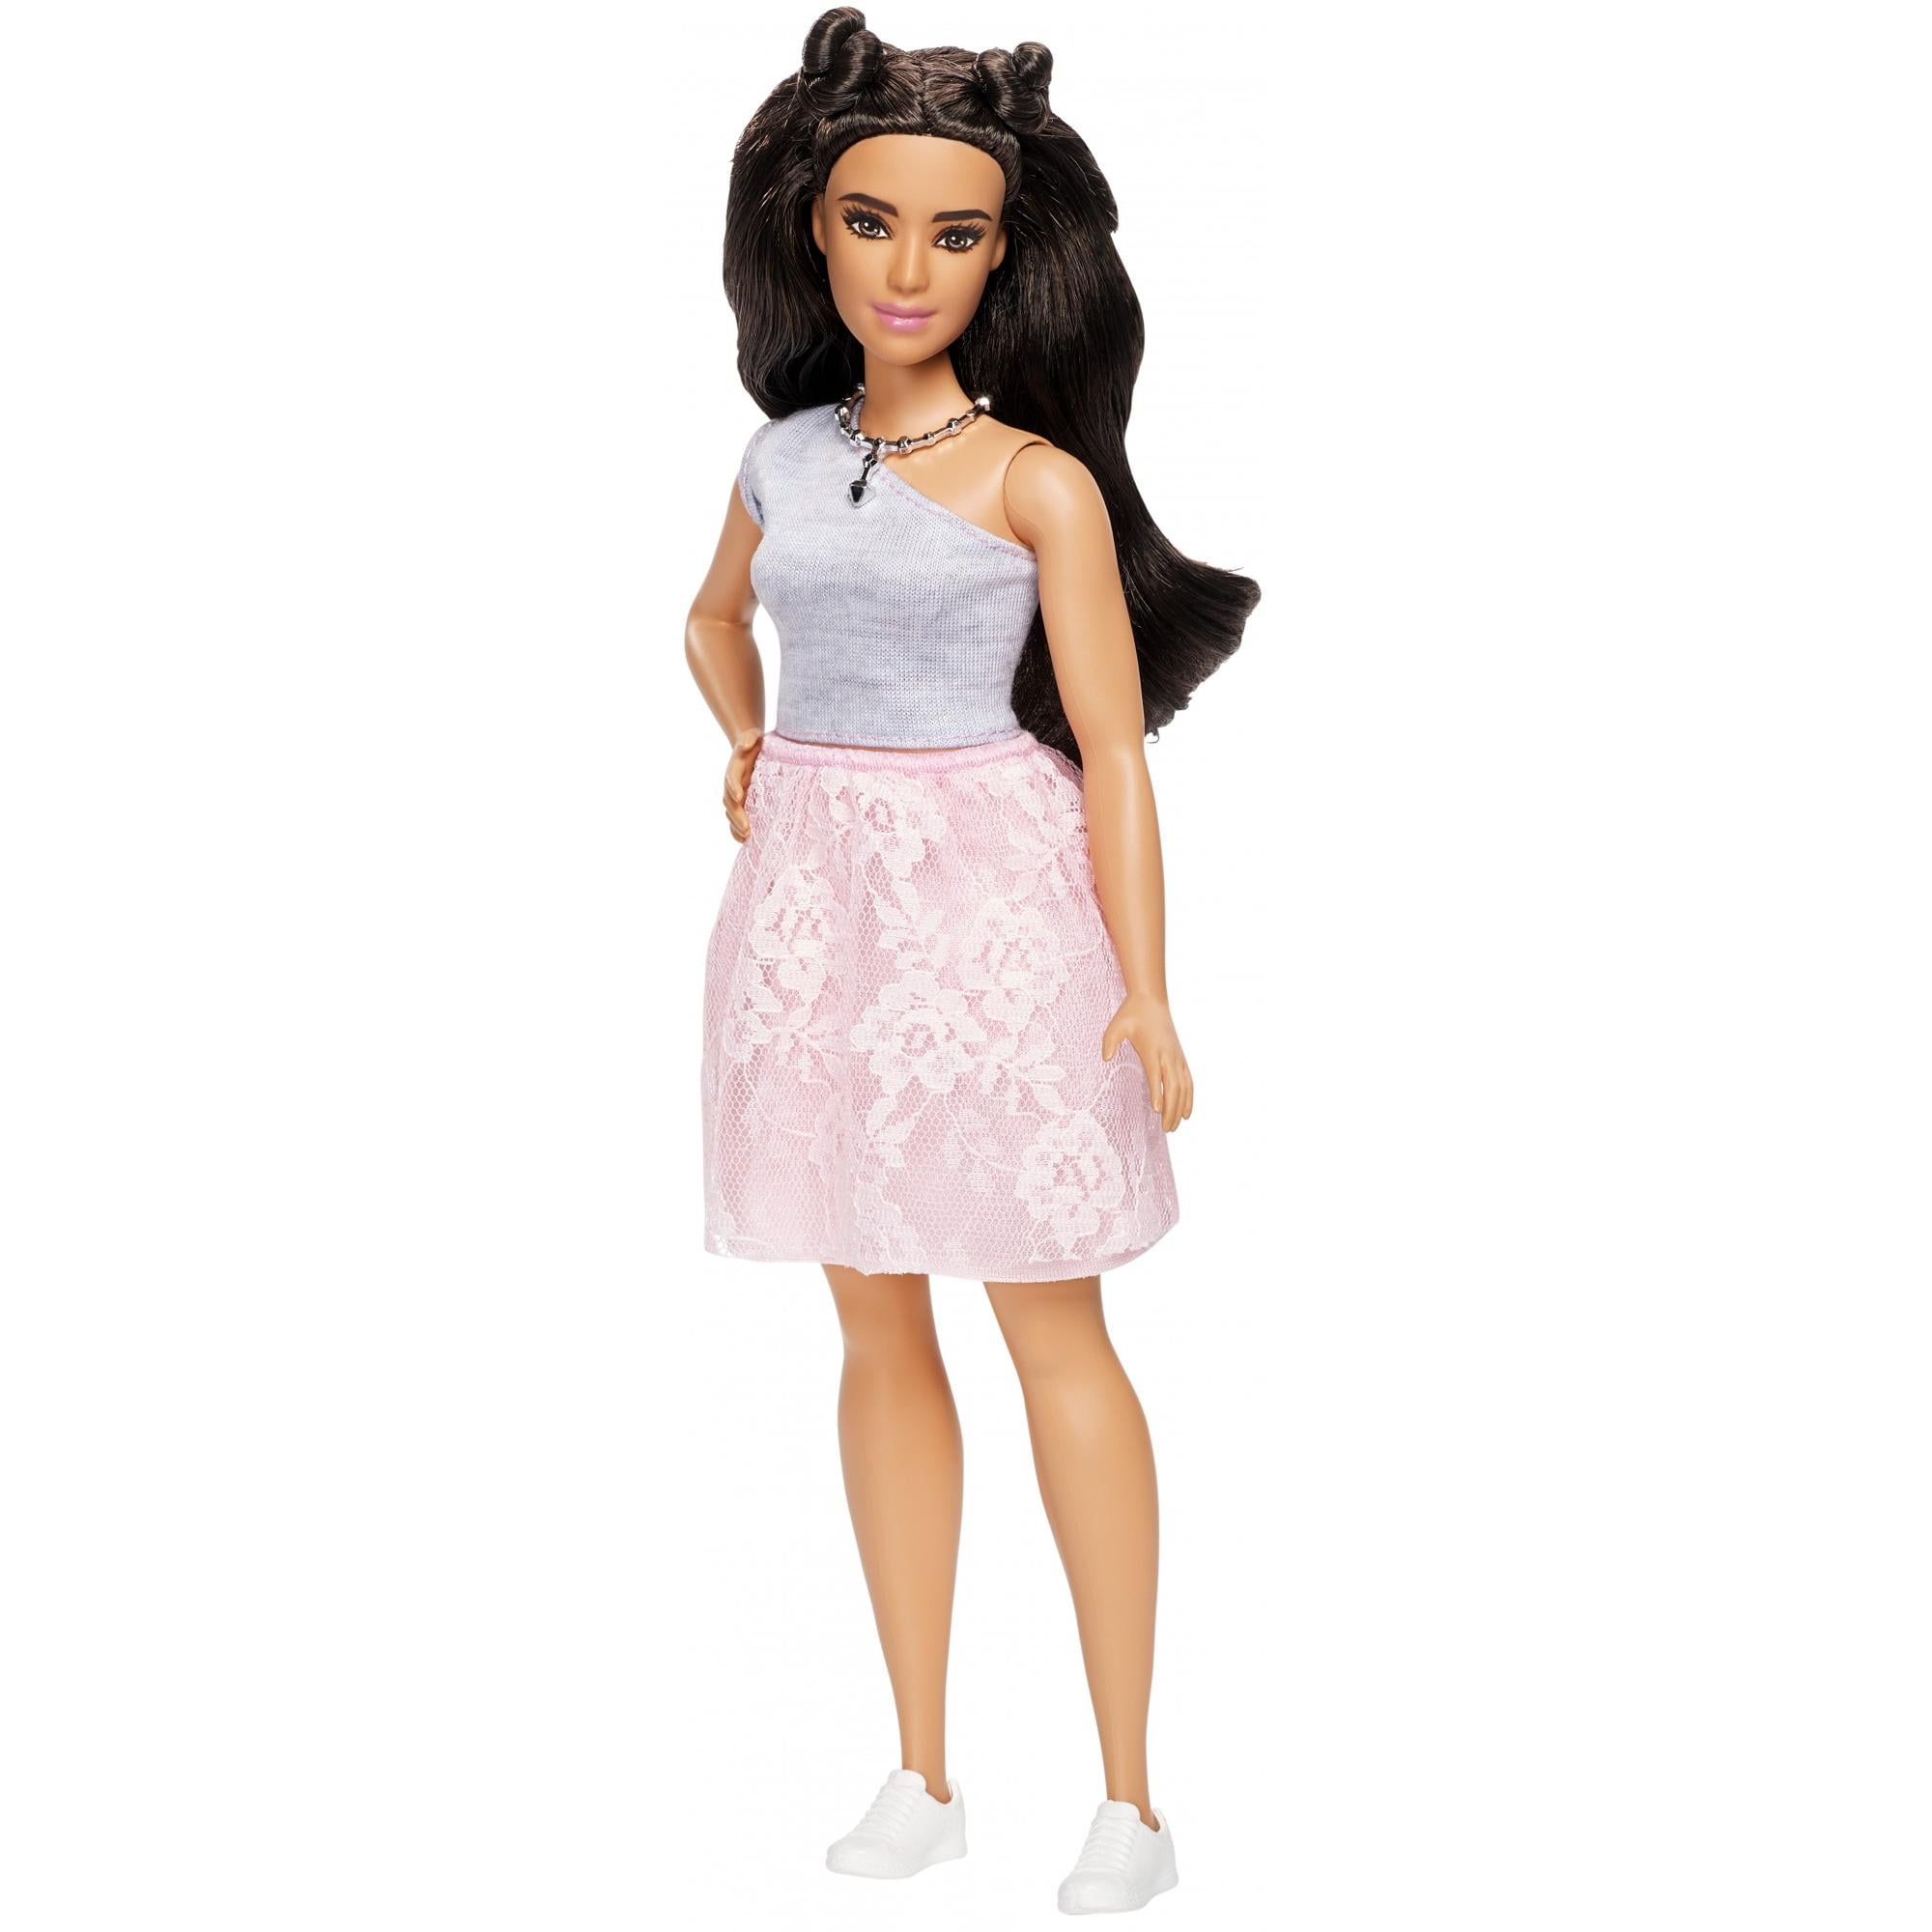 Barbie Fashionistas Doll Powder Pink Lace Curvy Body, Styled Dark Hair ...